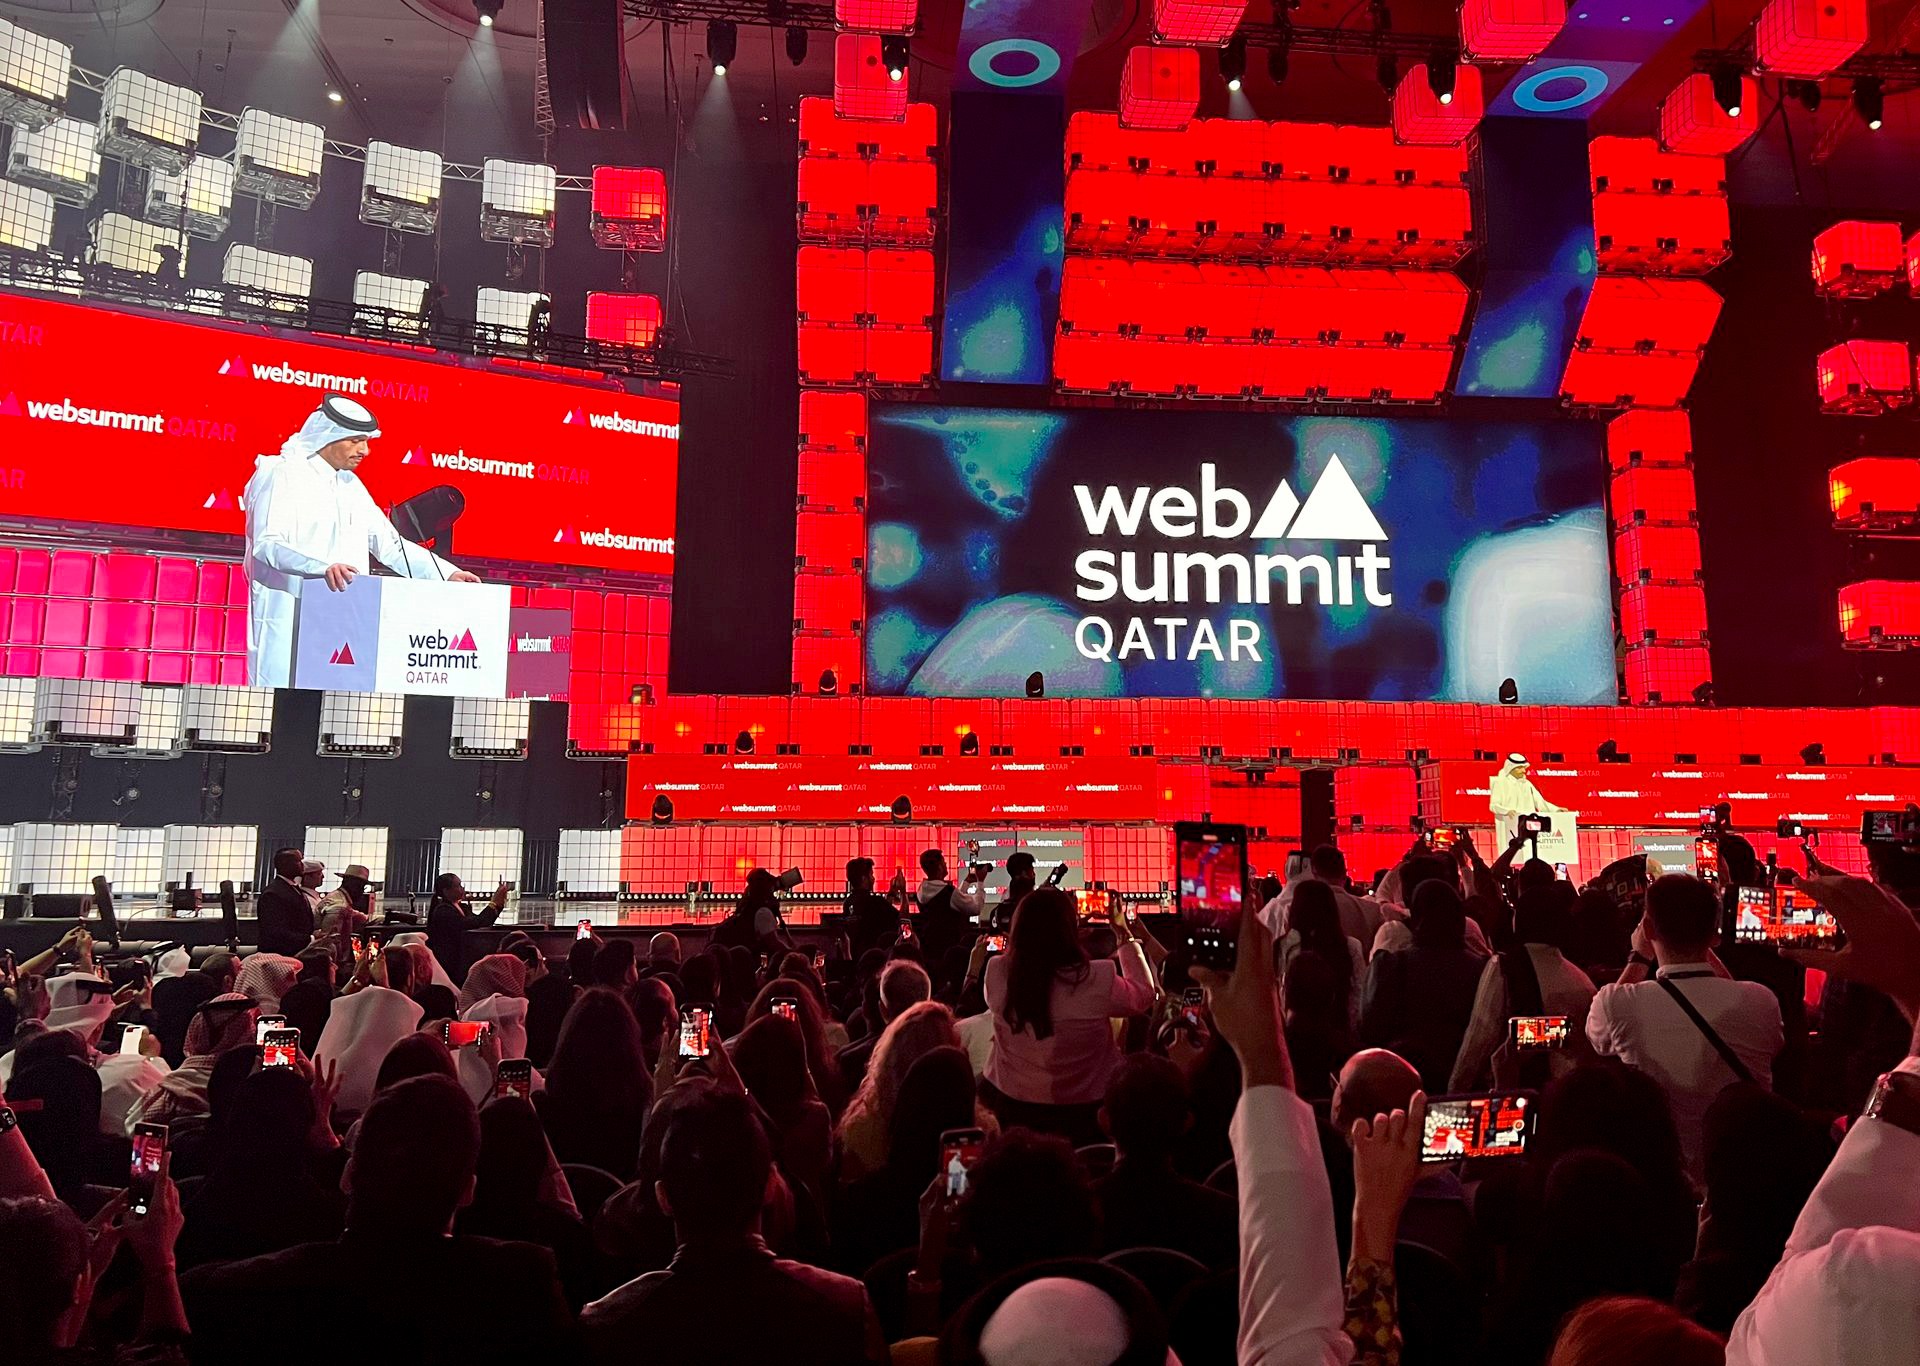 خلال قمة الويب.. قطر تستثمر مليار دولار لدعم رواد الأعمال والمشاريع الناشئة بالمنطقة | تكنولوجيا – البوكس نيوز